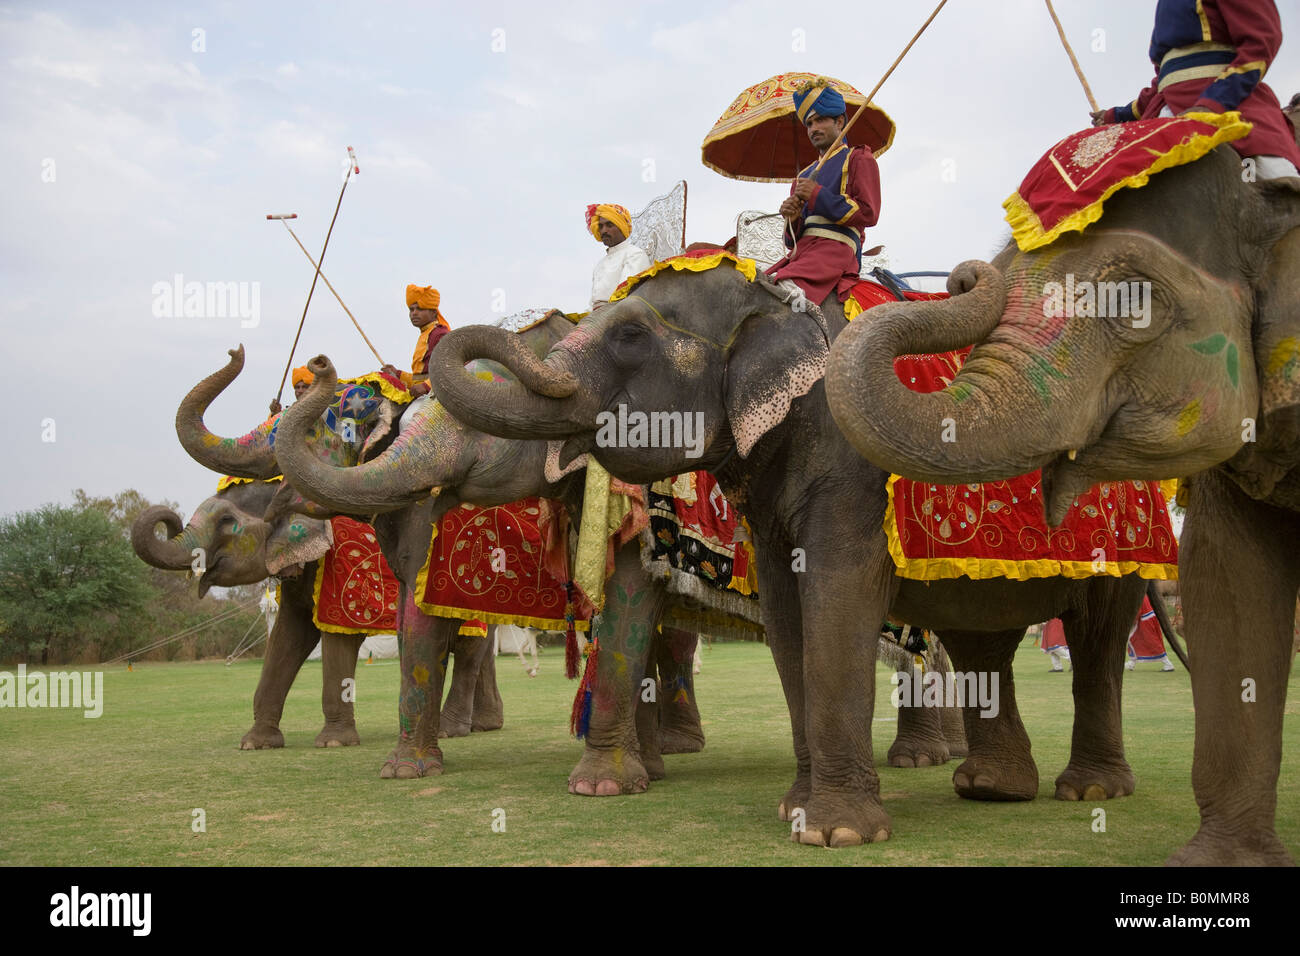 La décoration peinte aux couleurs vives des éléphants et des cornacs lineup pour cérémonies d'ouverture d'un match de polo d'éléphants dans le Rajasthan en Inde Banque D'Images